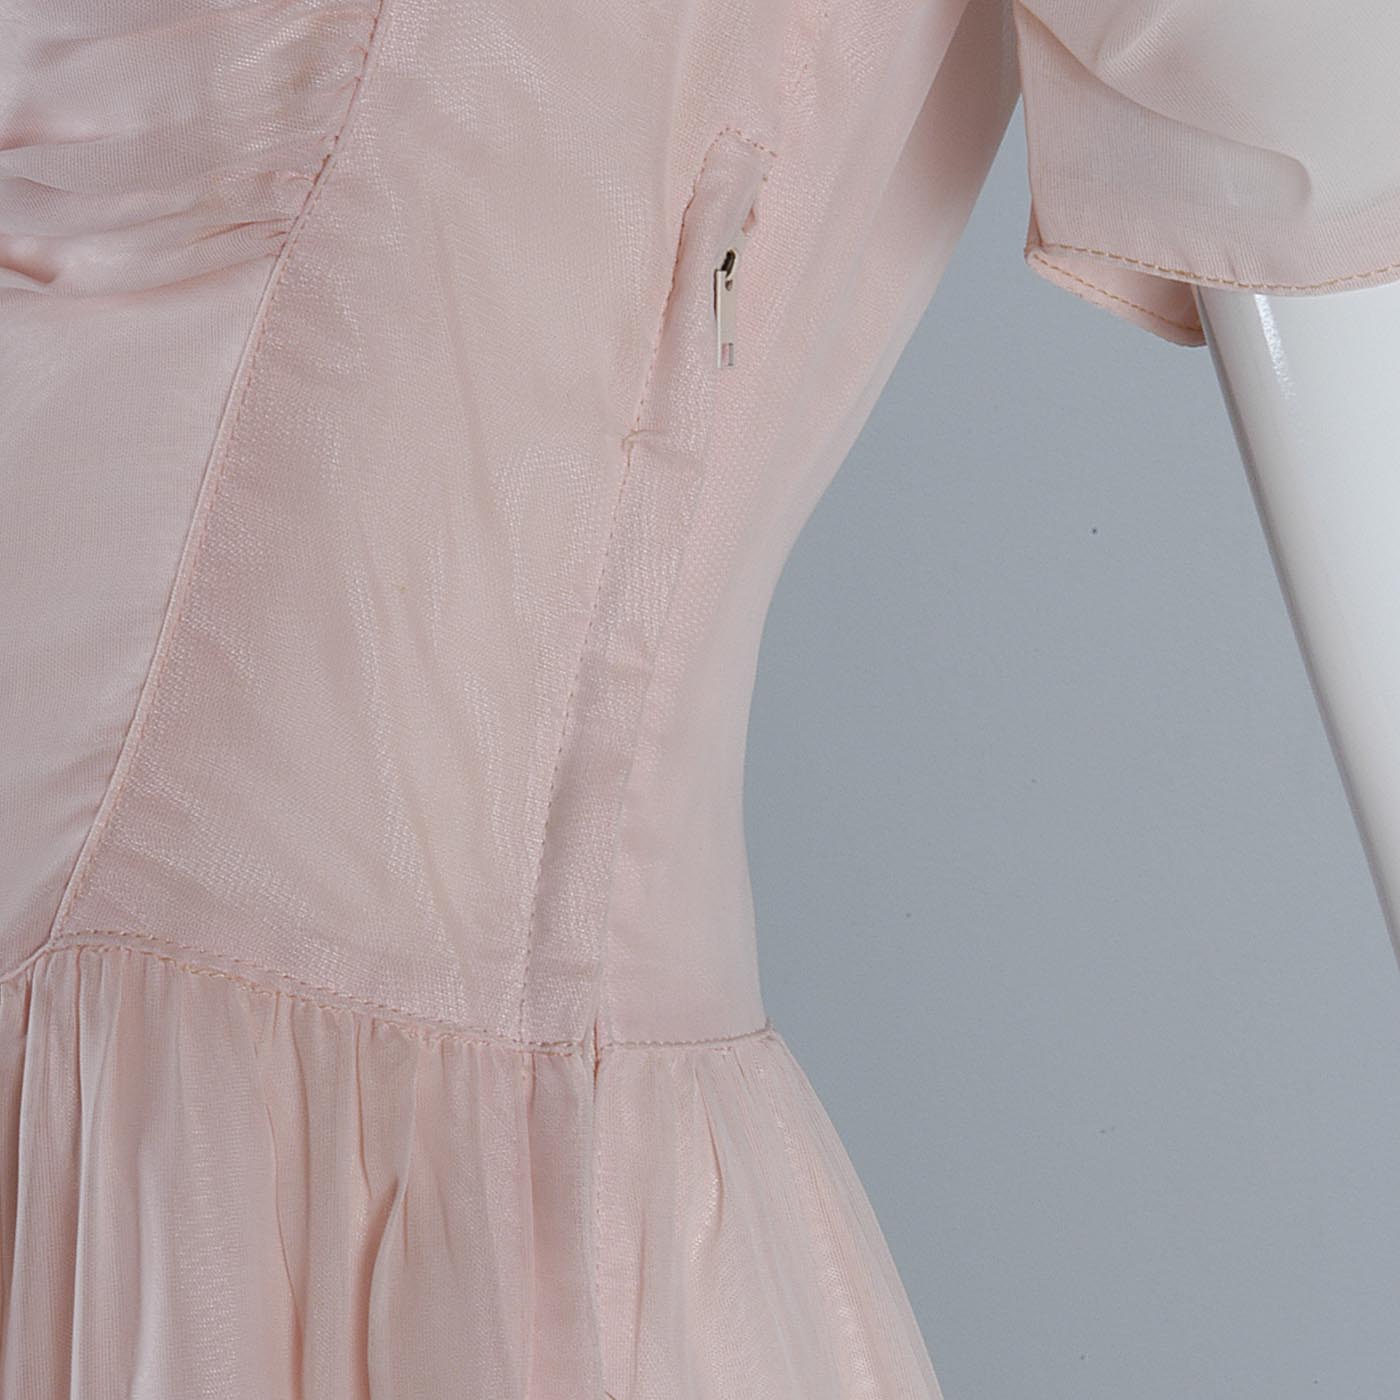 1940s Old Hollywood Pink Sheer Chiffon Dress